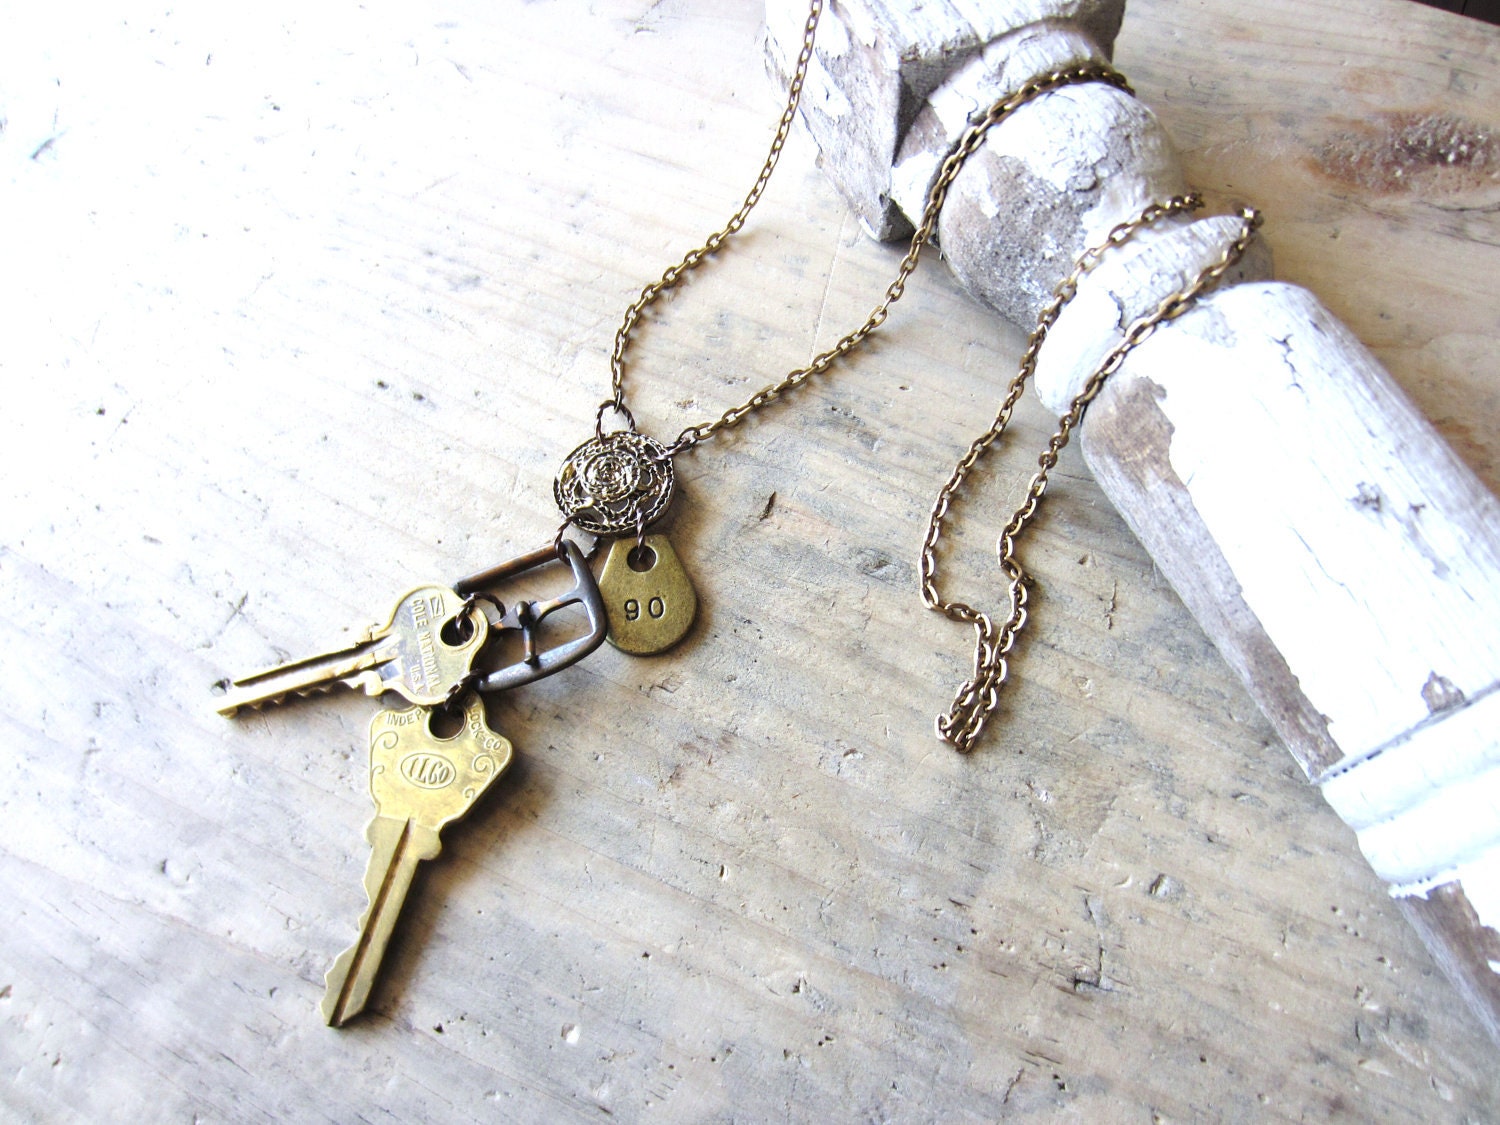 Vintage Keys Pendant Necklace - VintageScraps